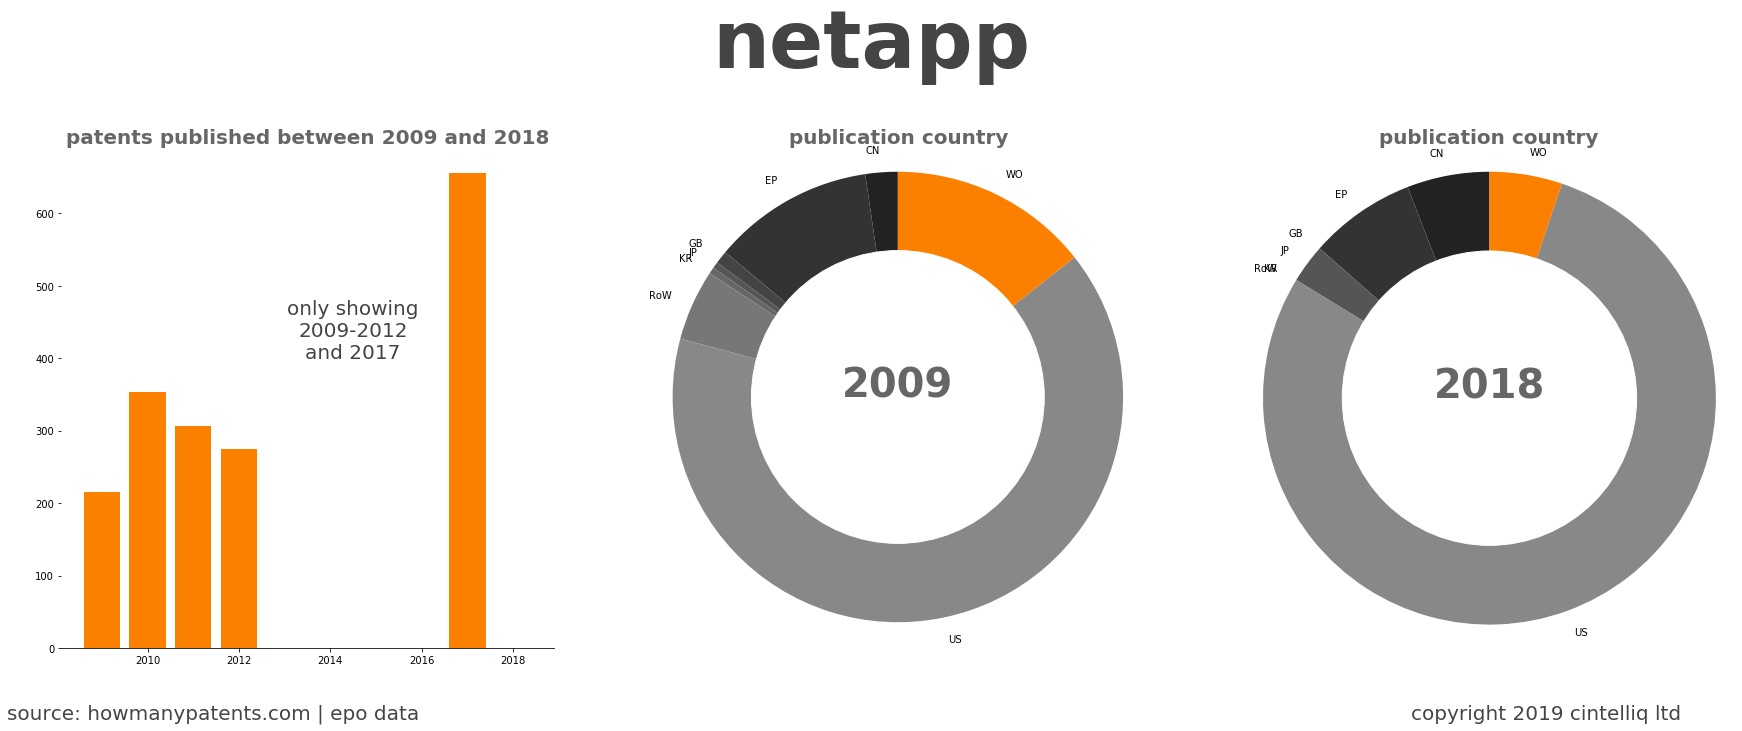 summary of patents for Netapp